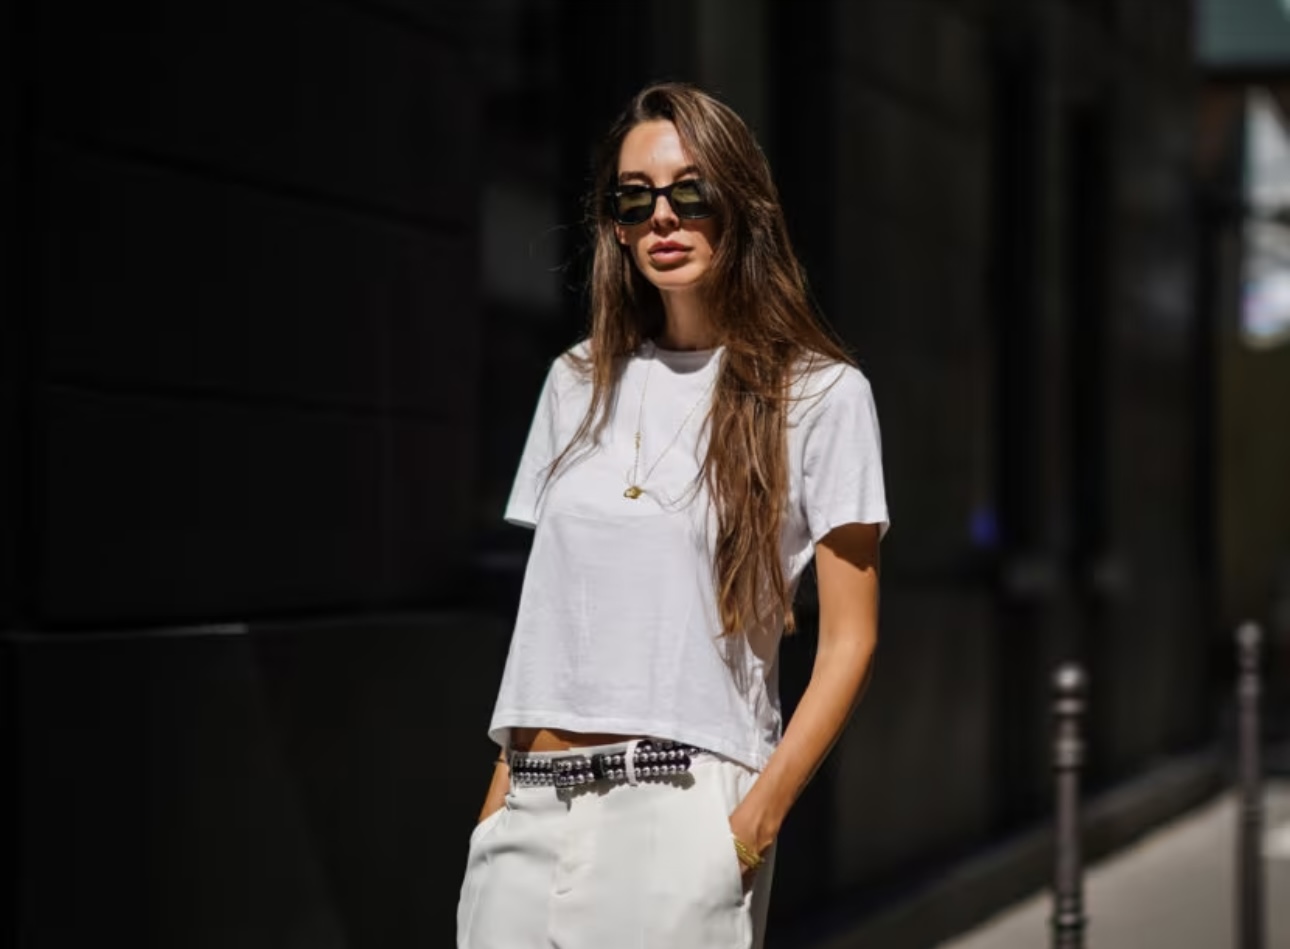 White t-shirt: come scegliere quella perfetta